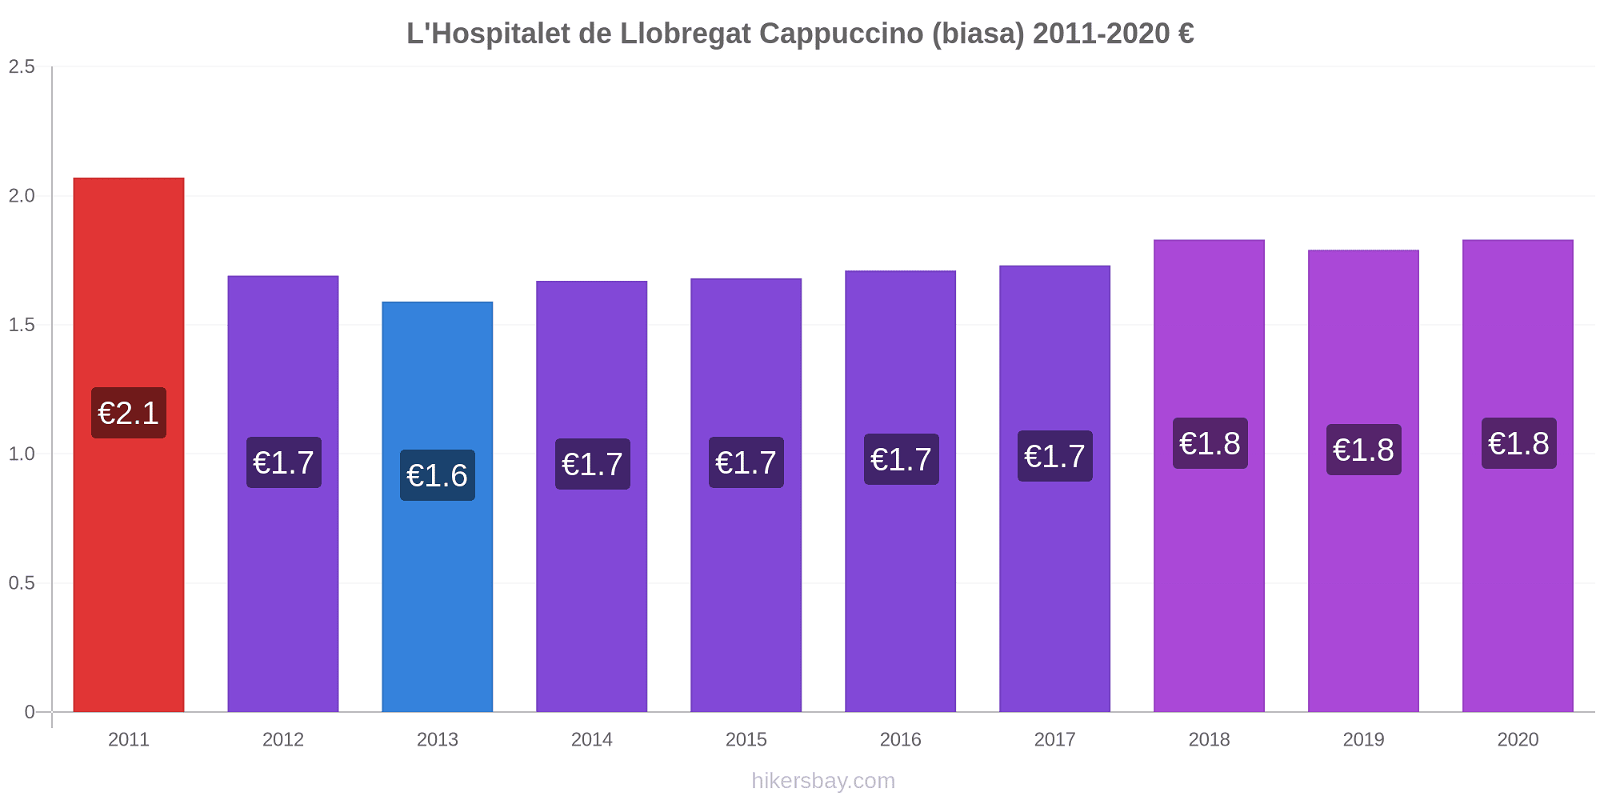 L'Hospitalet de Llobregat perubahan harga Cappuccino (biasa) hikersbay.com